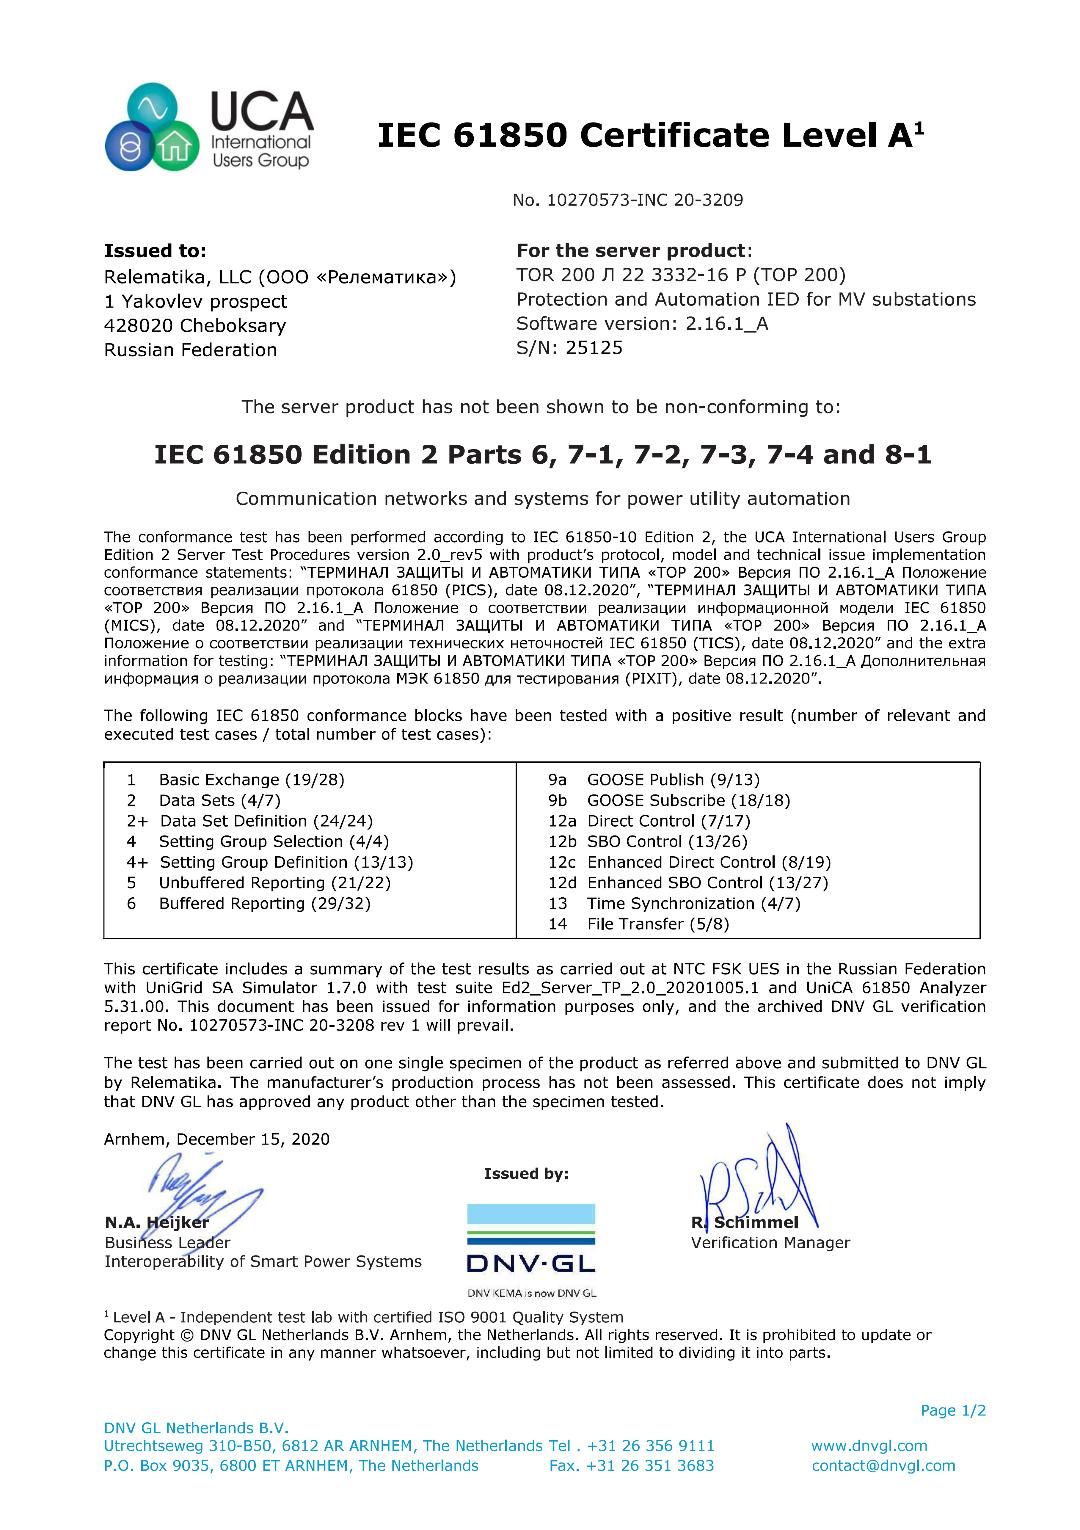 IEC 61850 Certificate Level A - TOR 200